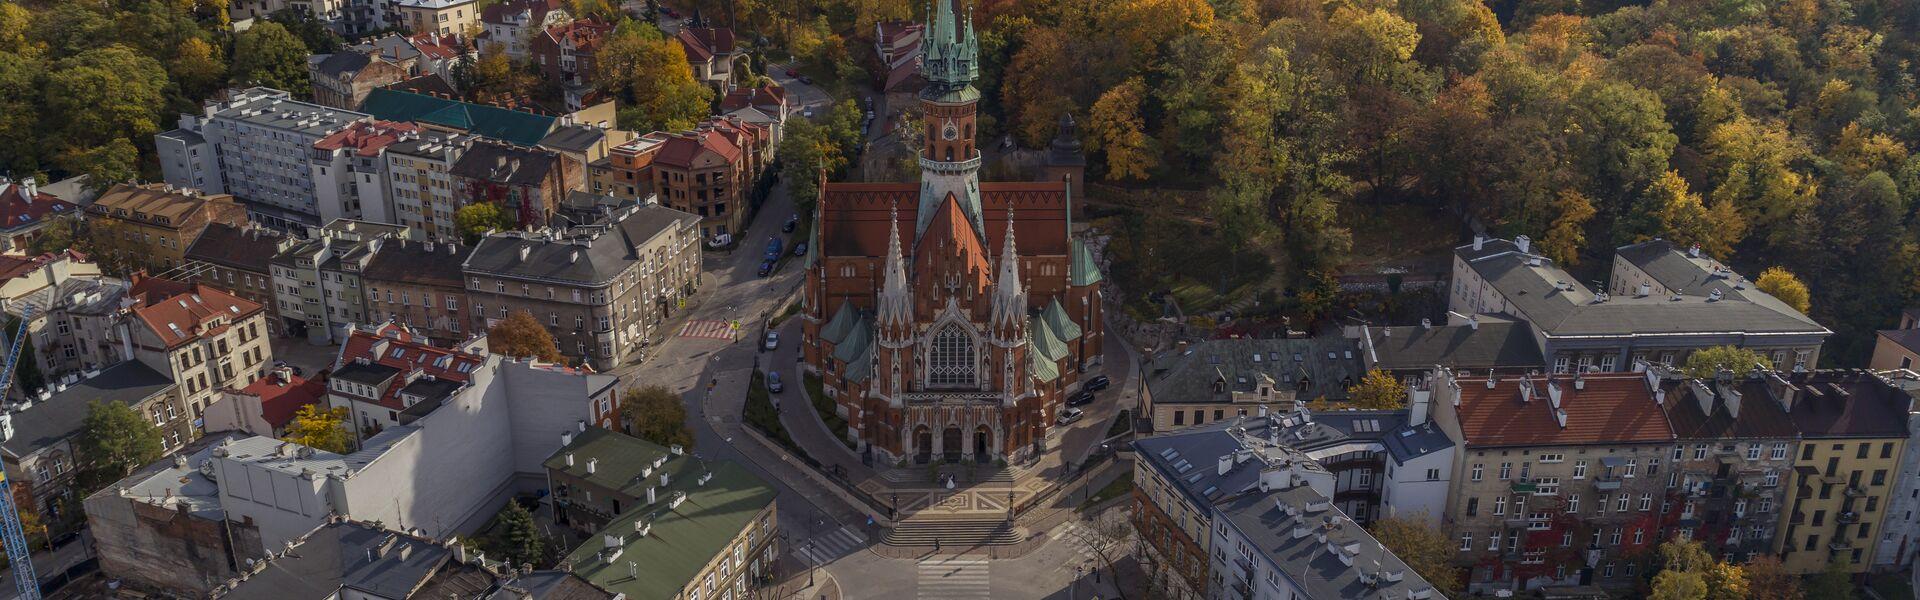 Widok na krakowskie Podgórze z góry. W centrum Kościół świętego Józefa